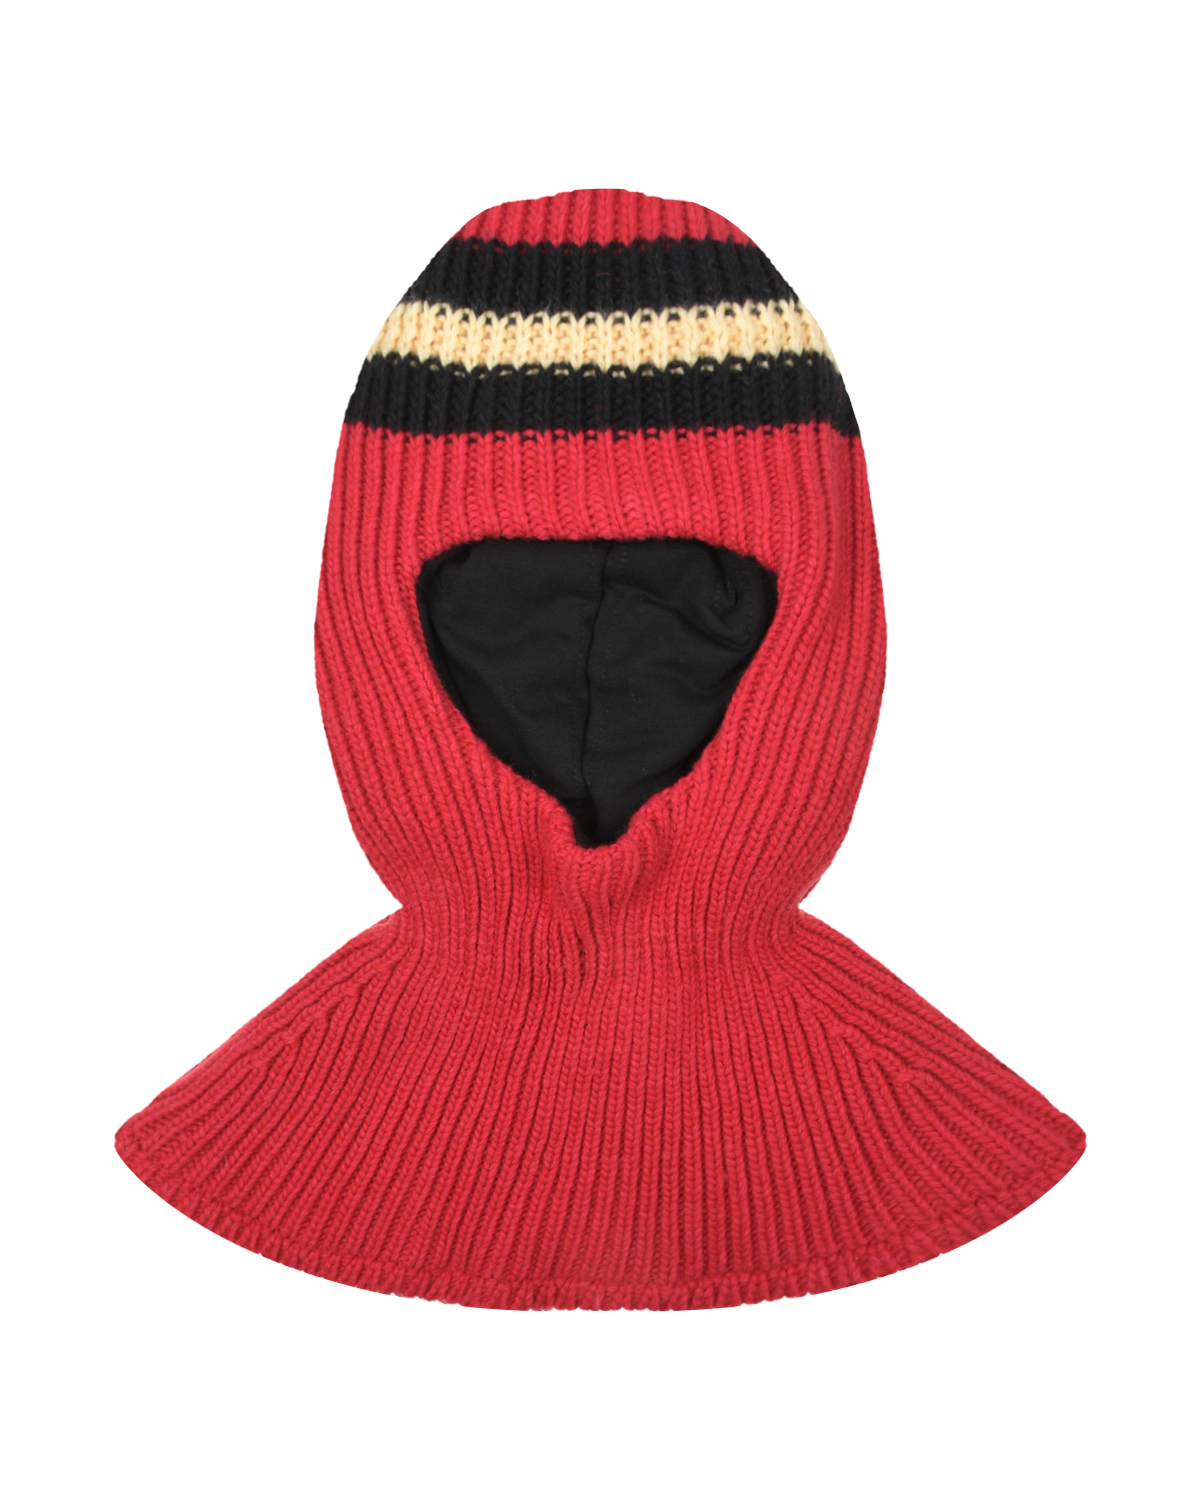 Красная шапка-шлем с черными полосками Chobi детская, размер 53, цвет красный - фото 1